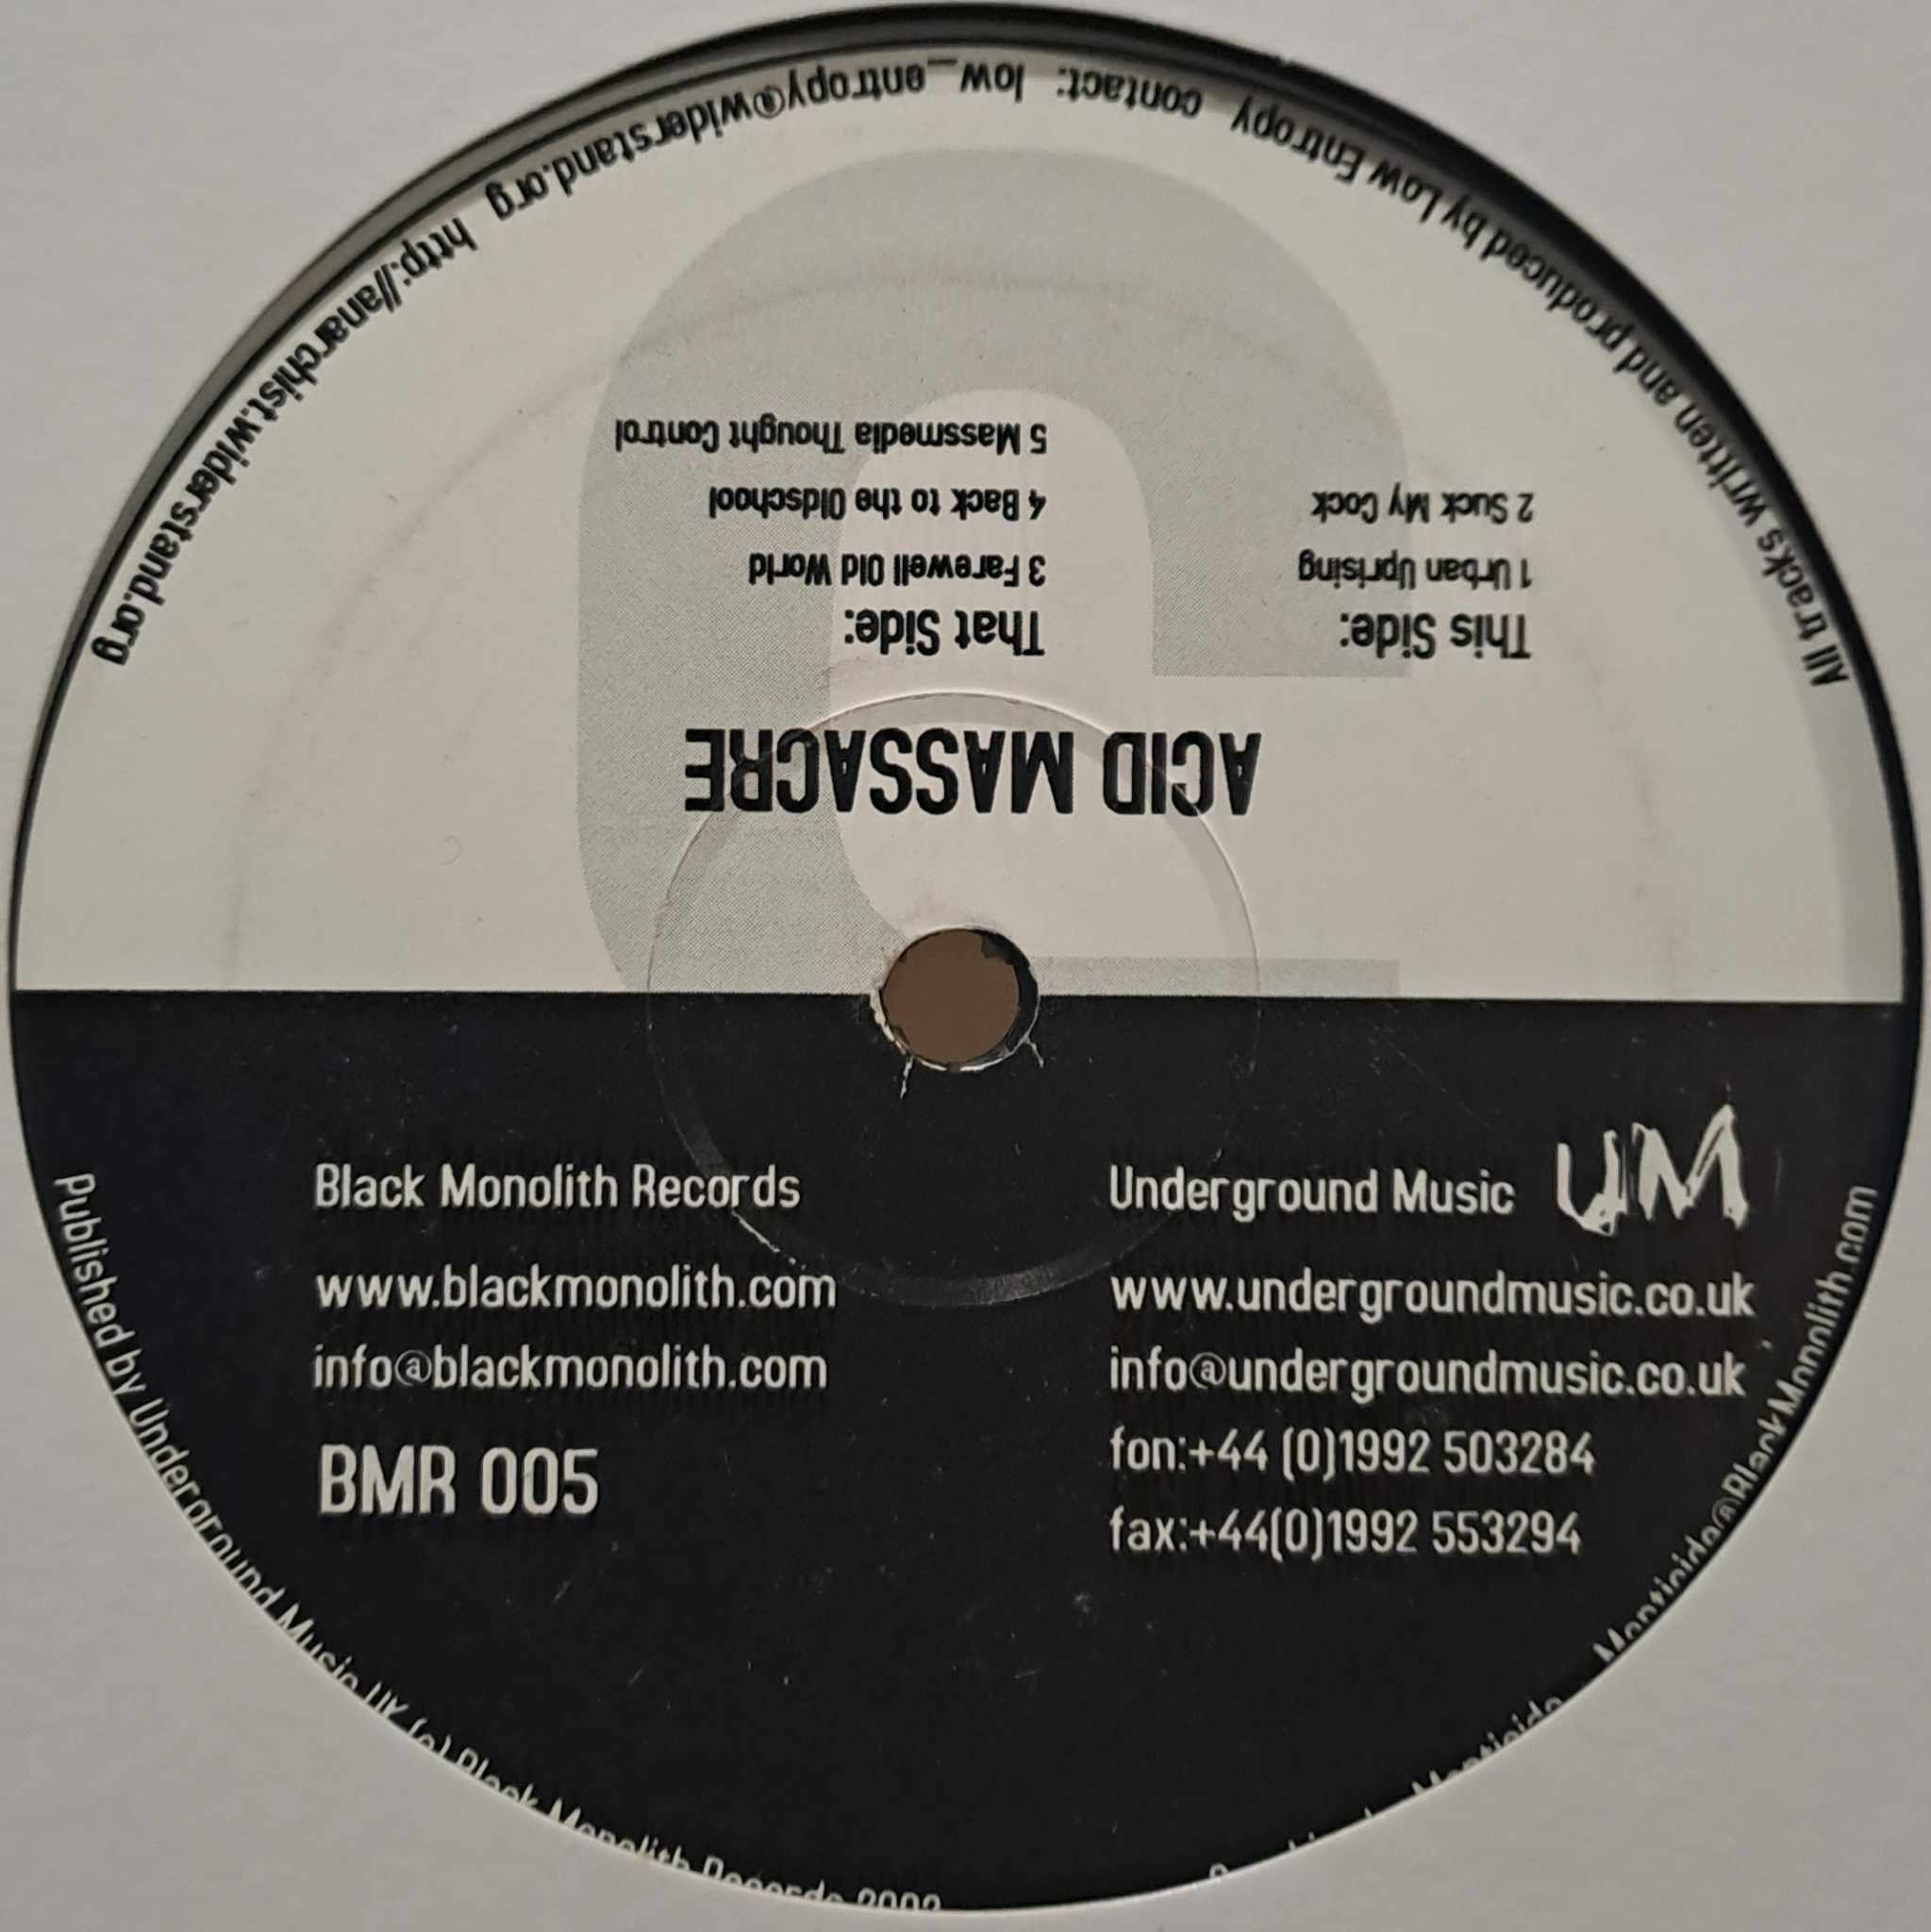 Black Monolith Records 005 - vinyle acid